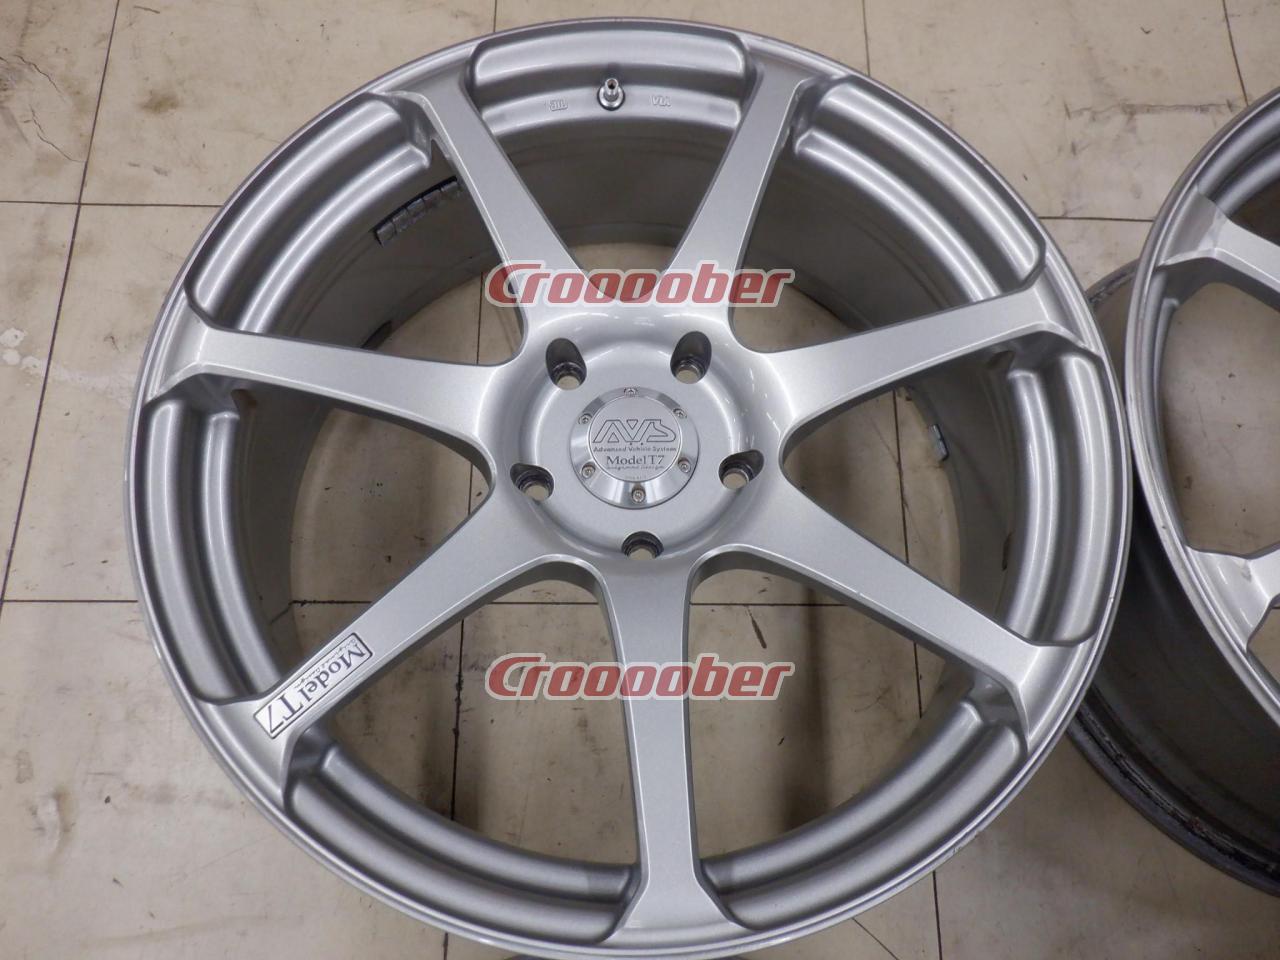 Wheel Only Four Set] YOKOHAMA AVS MODEL T7 7.5Jx18+45114.3-5H for Sale  Croooober